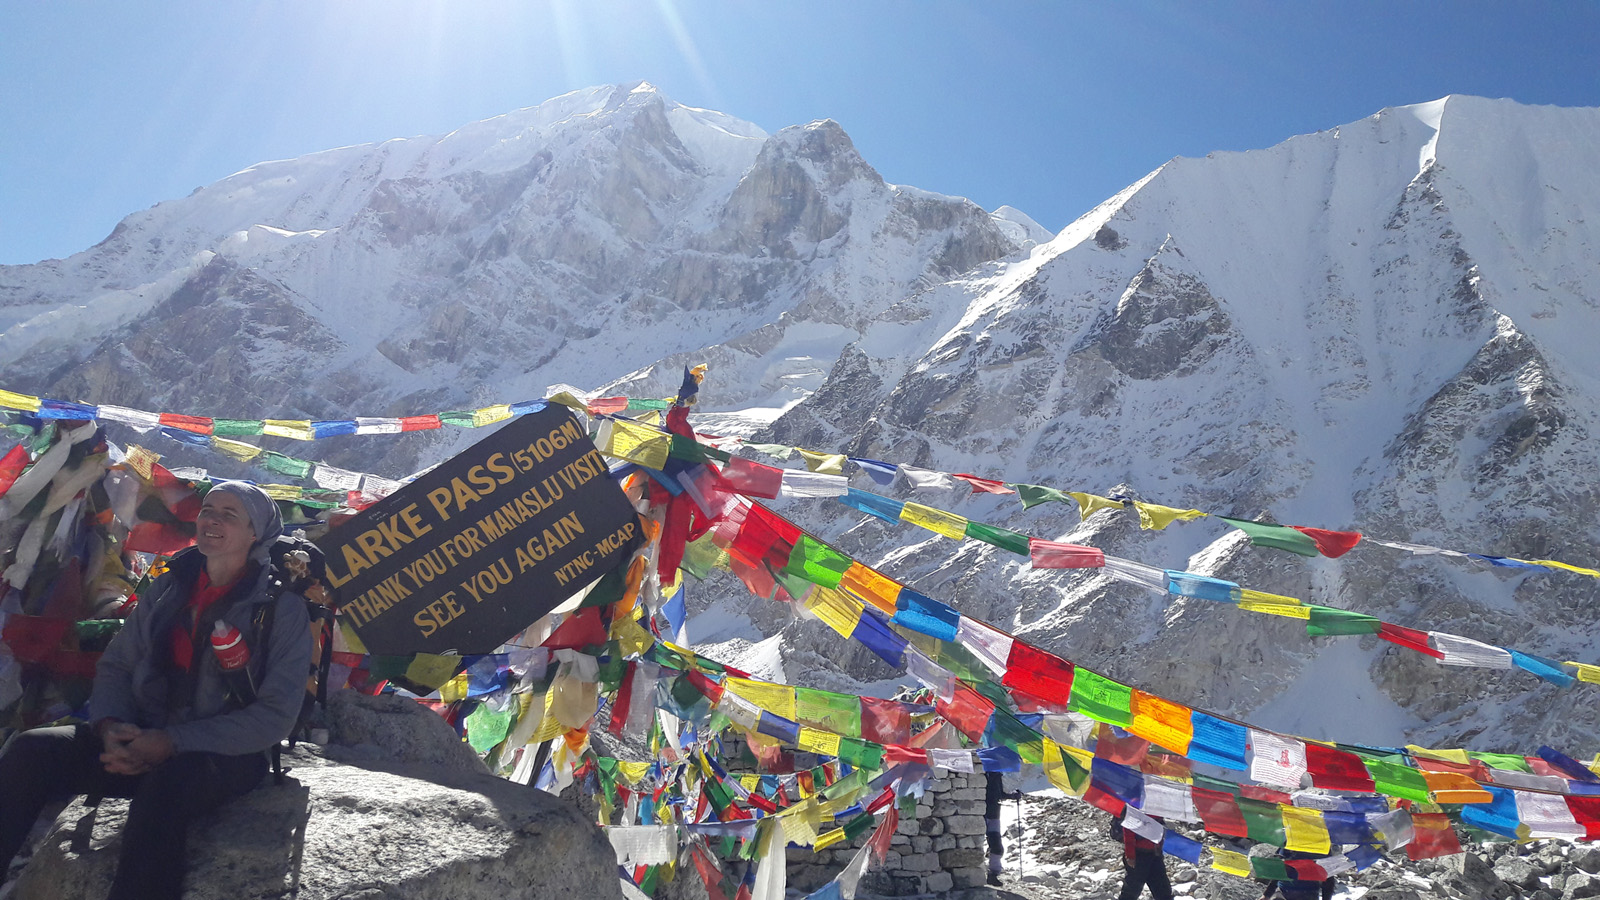 10 Trekking Peaks in Nepal